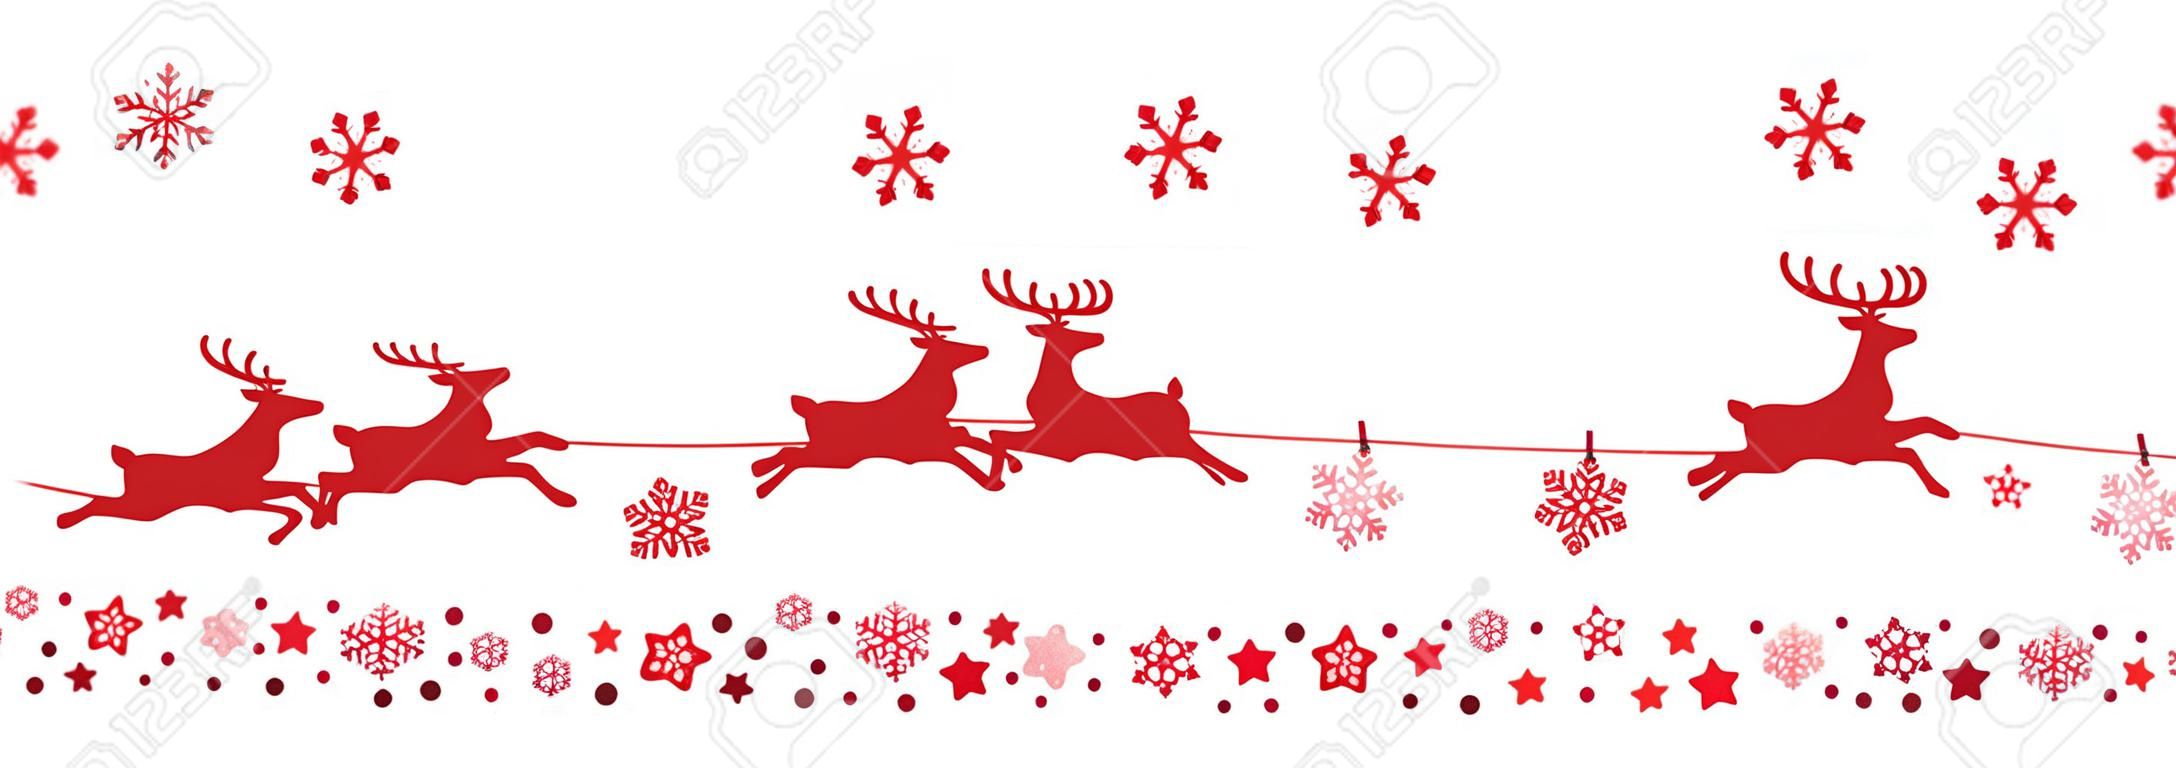 Санта санях оленей летающих снежинки красный силуэт